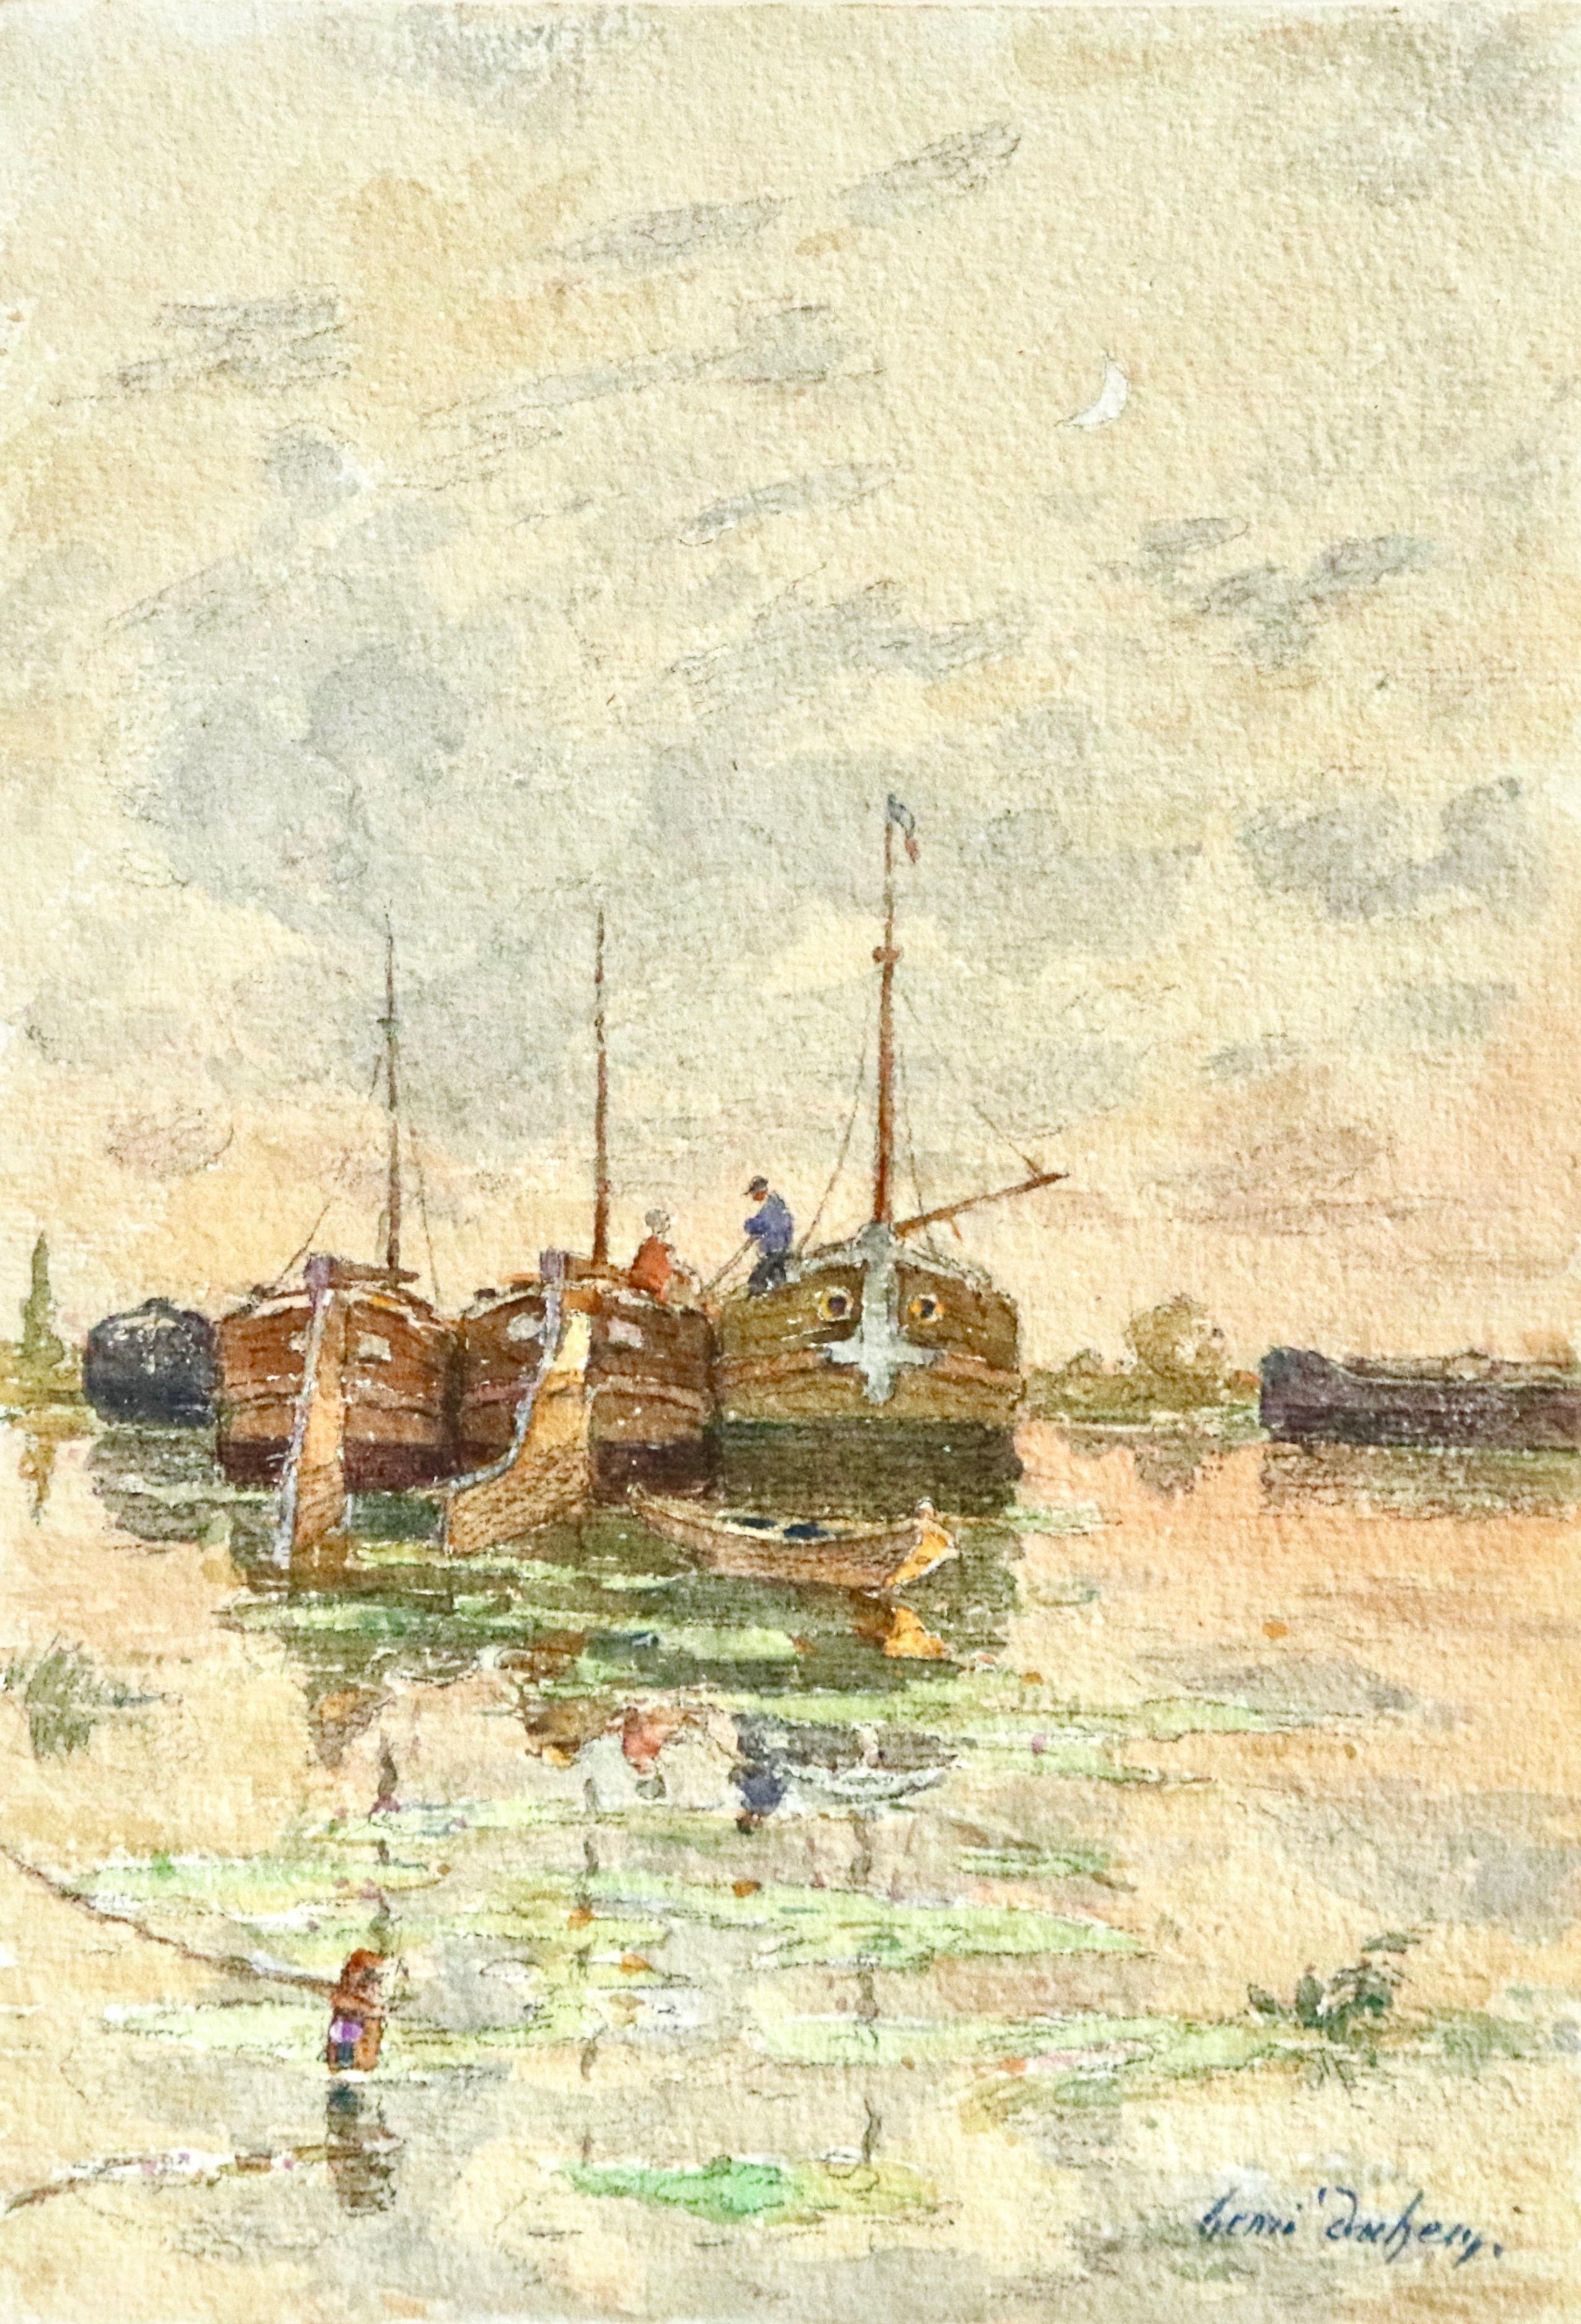 Aquarelle sur papier vers 1910 d'Henri Duhem représentant des personnages sur des bateaux sur la rivière, leurs reflets visibles dans l'eau en contrebas et un croissant de lune dans le ciel. Signé en bas à droite. Cette peinture n'est pas